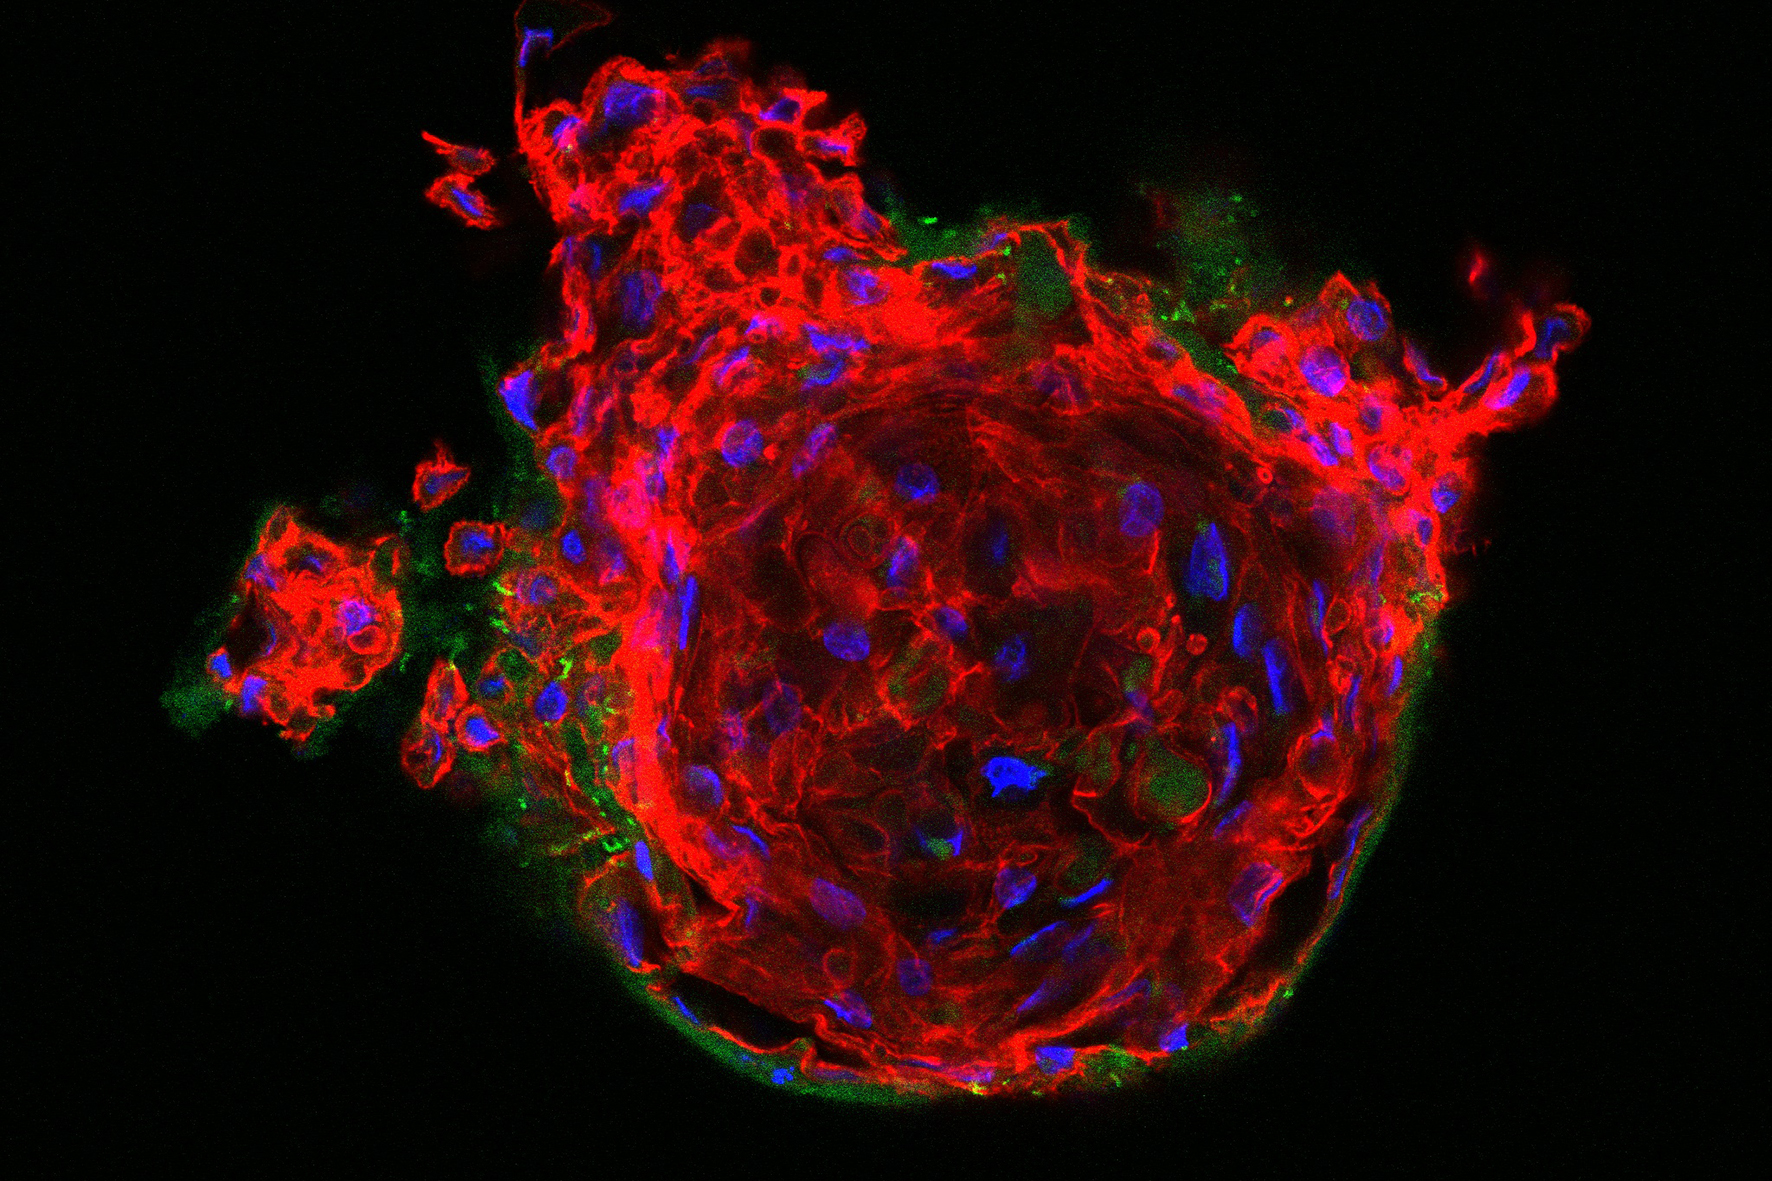 3D-Zellkulturen wie dieses fixierte humane epitheliale Organoid sollen künftig mit Lebendbildgebung untersuchbar sein, um zelluläre Prozesse zu visualisieren.